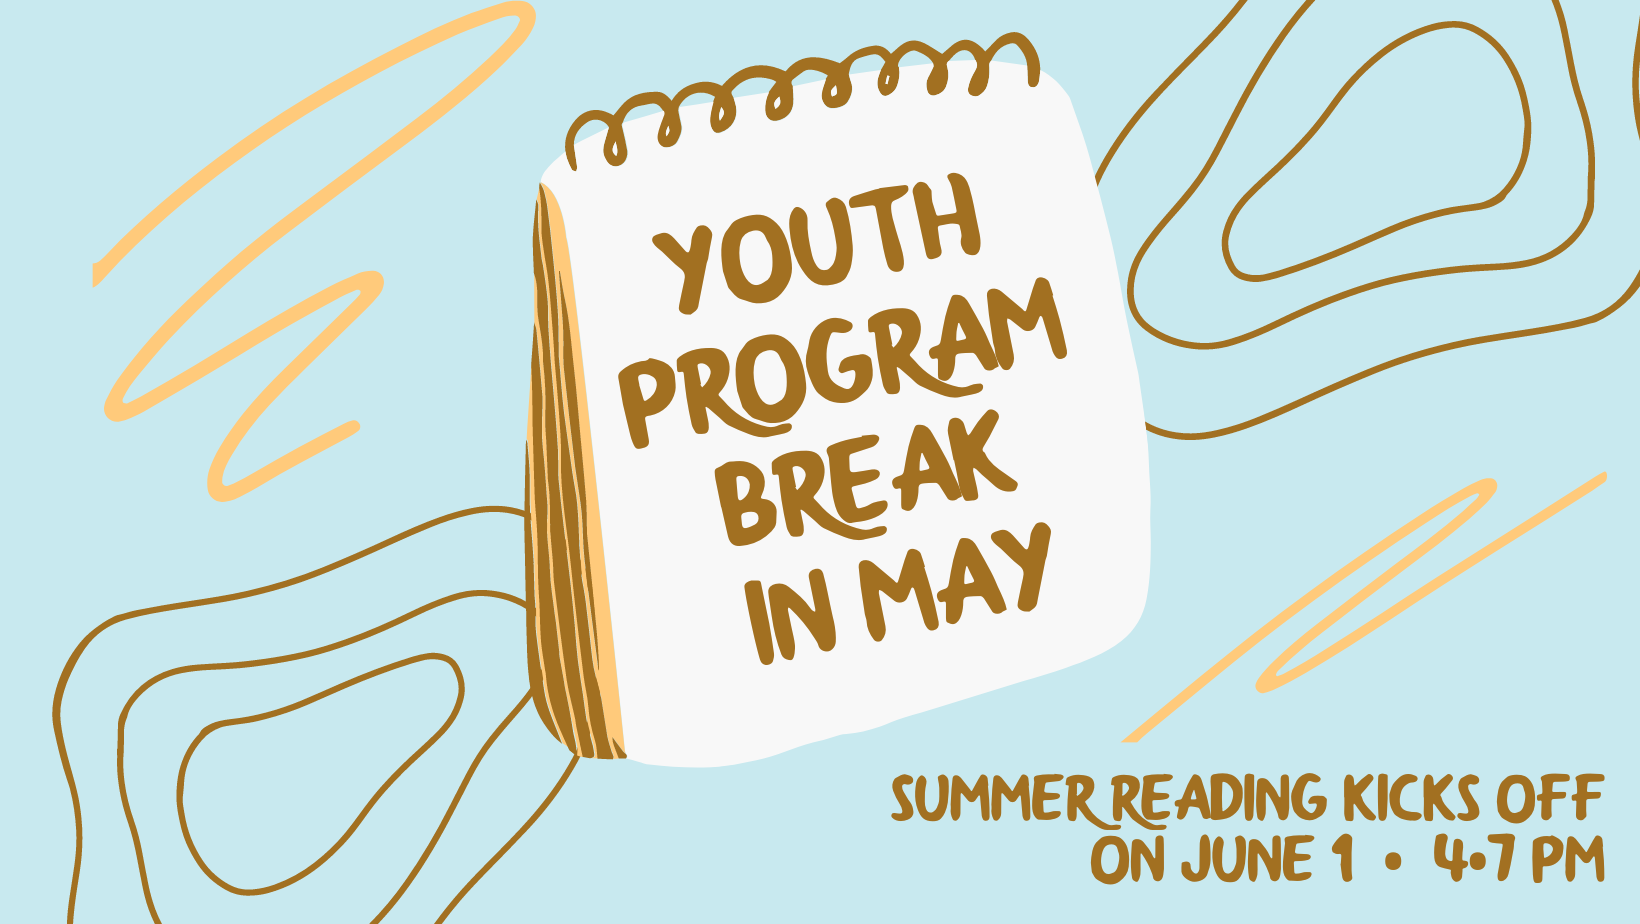 Youth Program Break in May